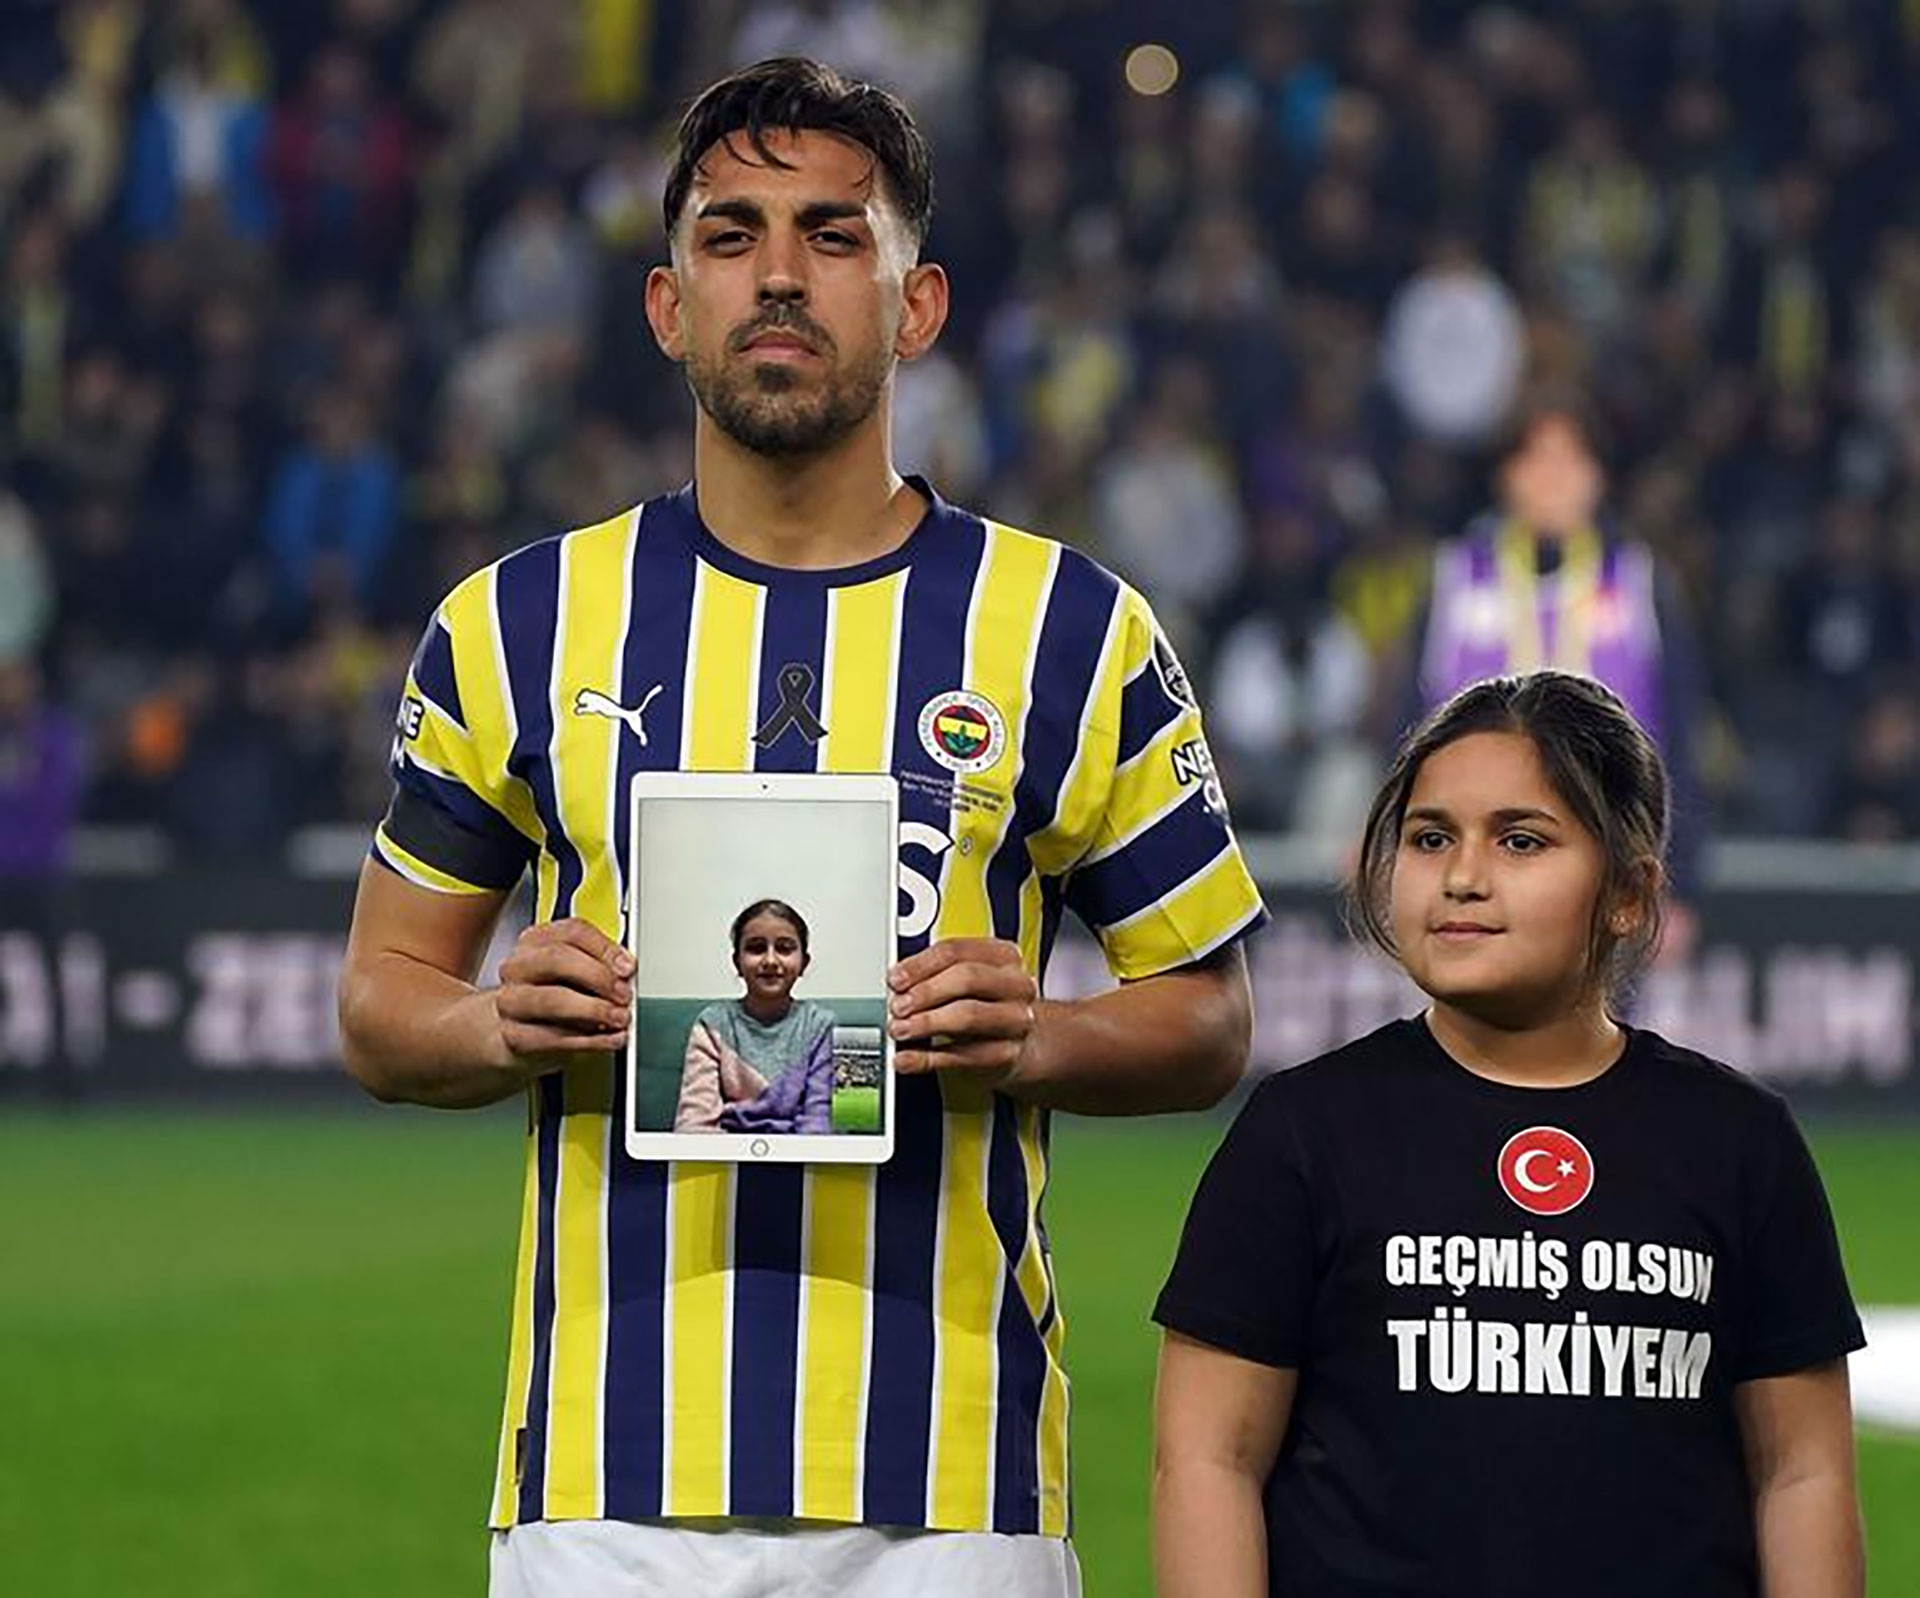 El lazo negro acompañó a la camiseta de Fenerbahçe en el regreso del fútbol turco